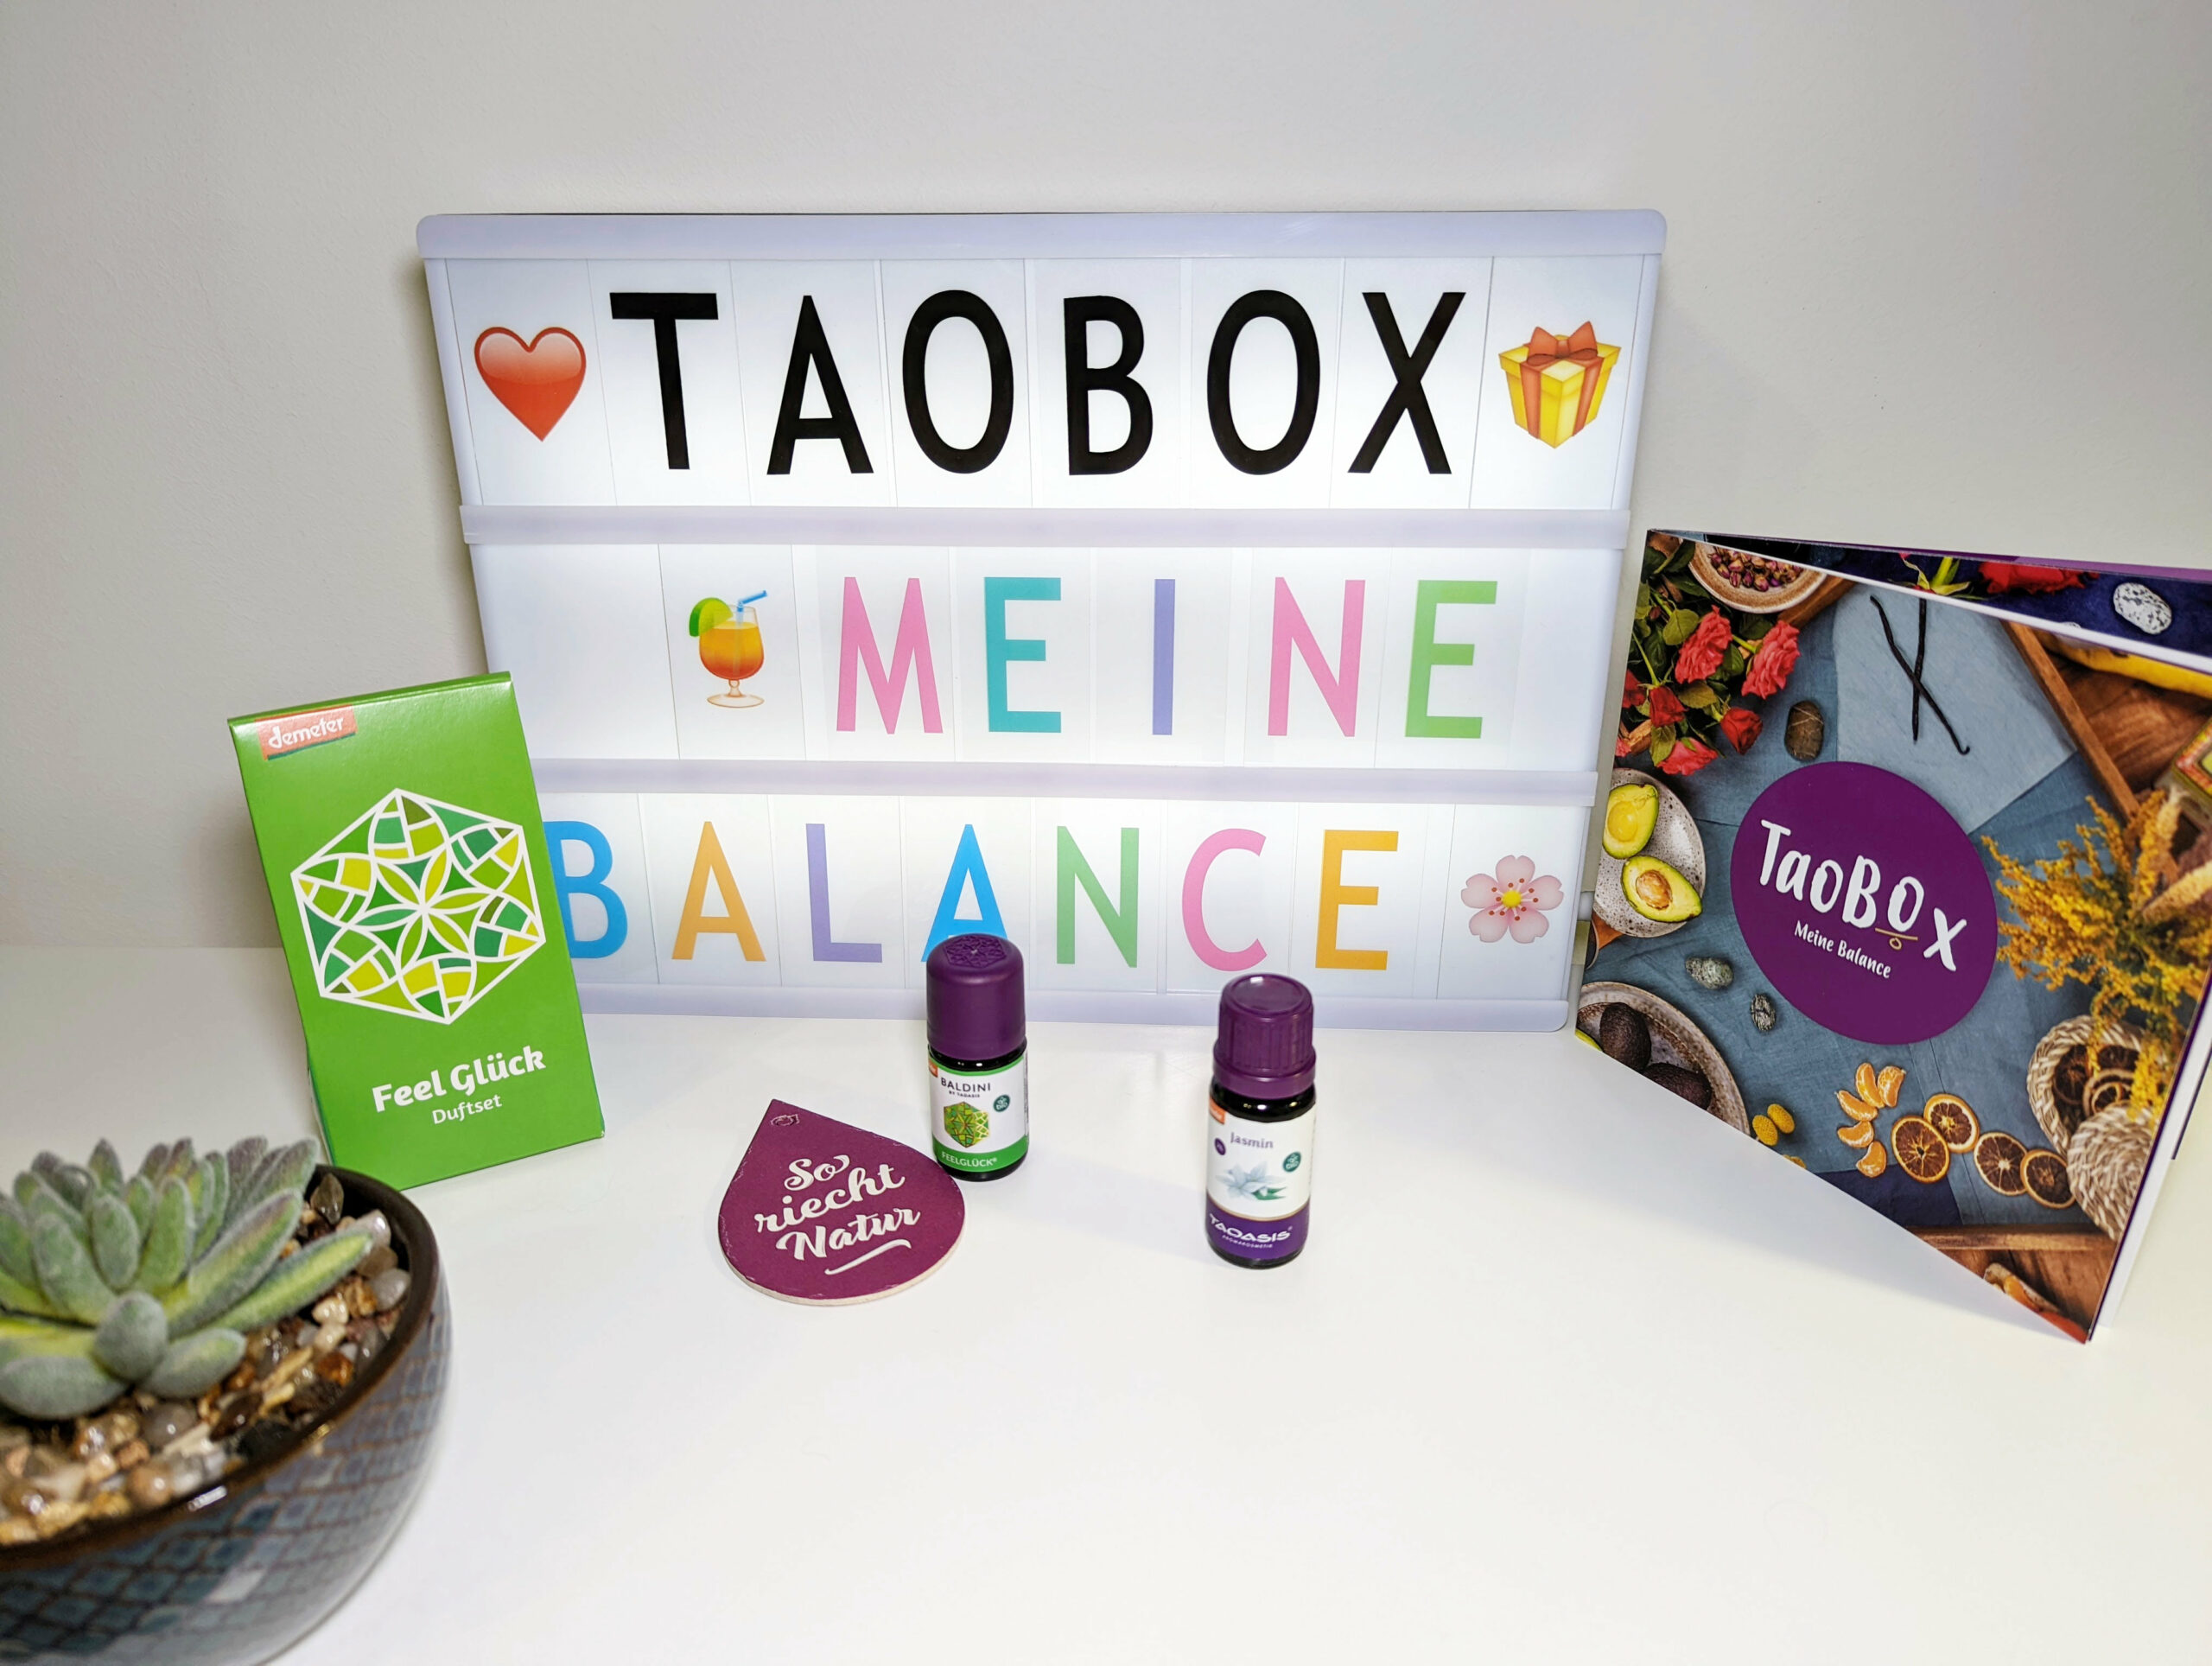 TaoBox – Meine Balance – Duftset und Jasminöl